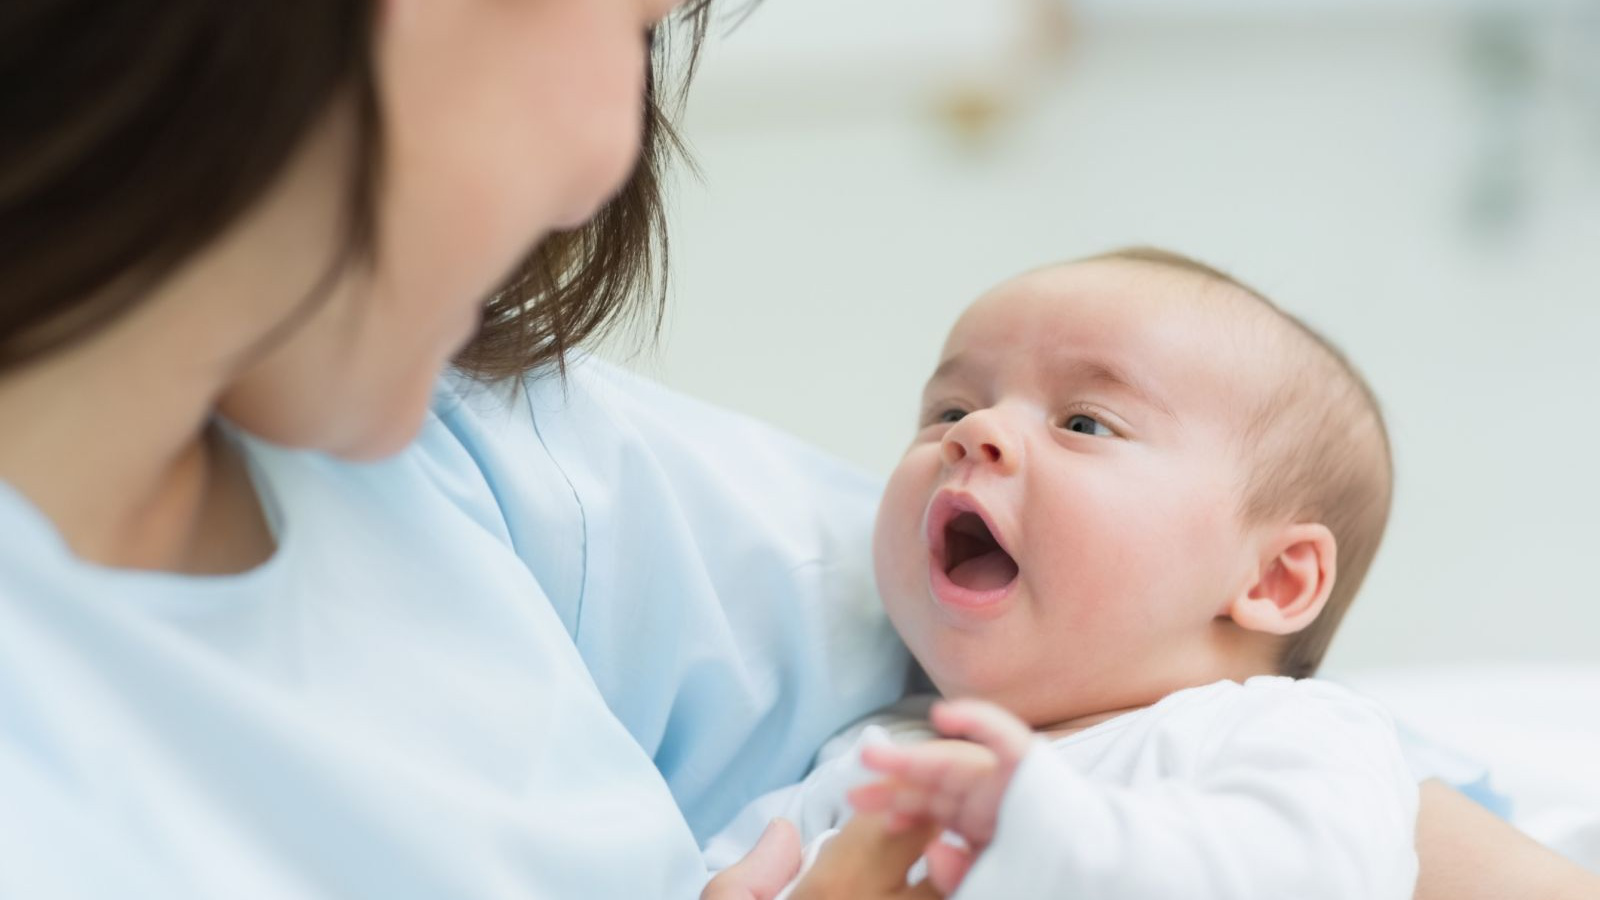 Viên đặt phụ khoa sau sinh có hiệu quả như thế nào?